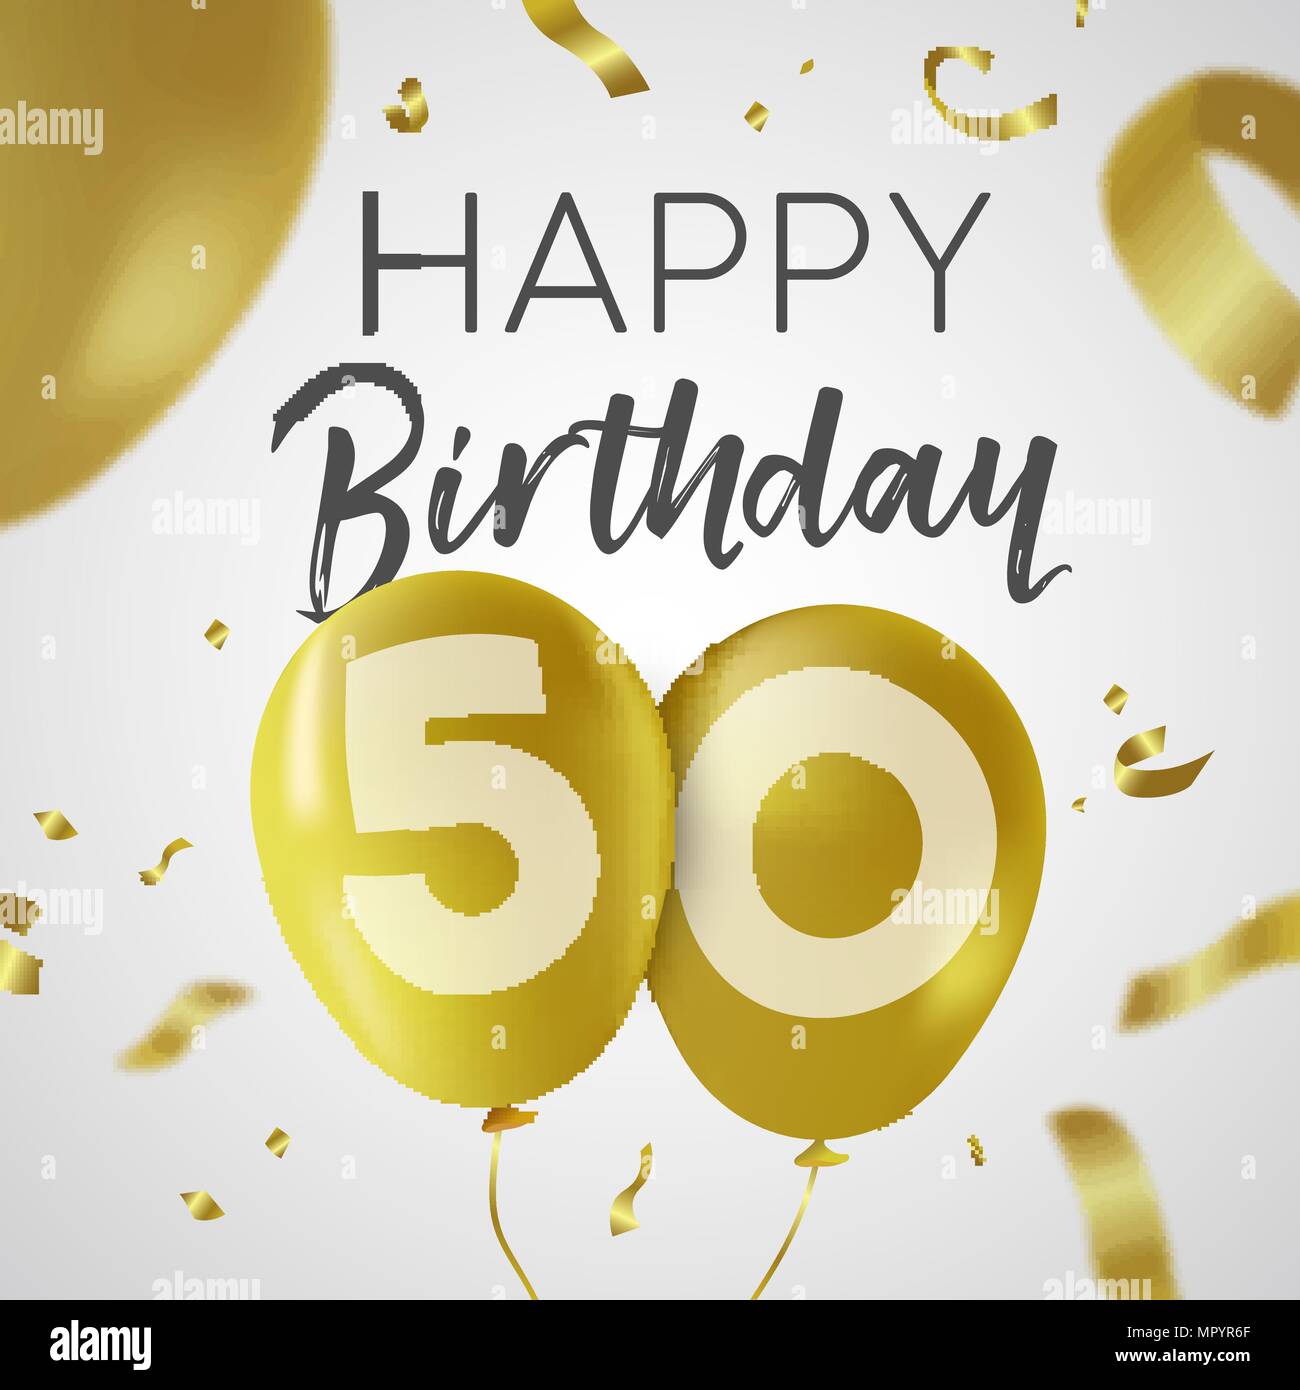 Ballon joyeux anniversaire « 50 ans » - FestiShop